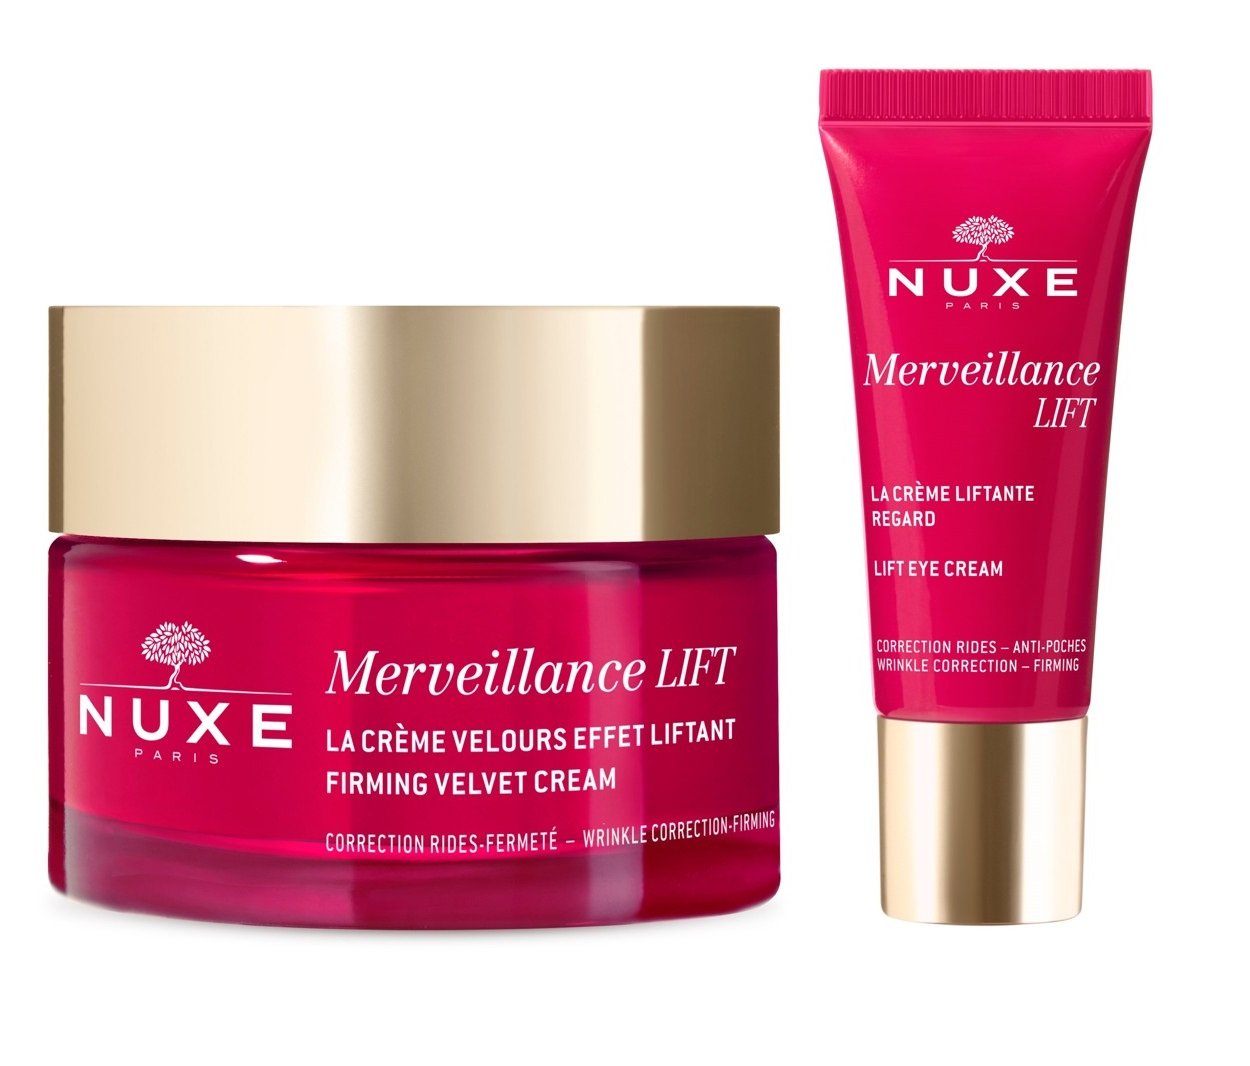 Nuxe - Merveillance Lift Firming Velvet Day Cream 50 ml + Nuxe - Mervellance Lift Eye Contour Cream 15 ml